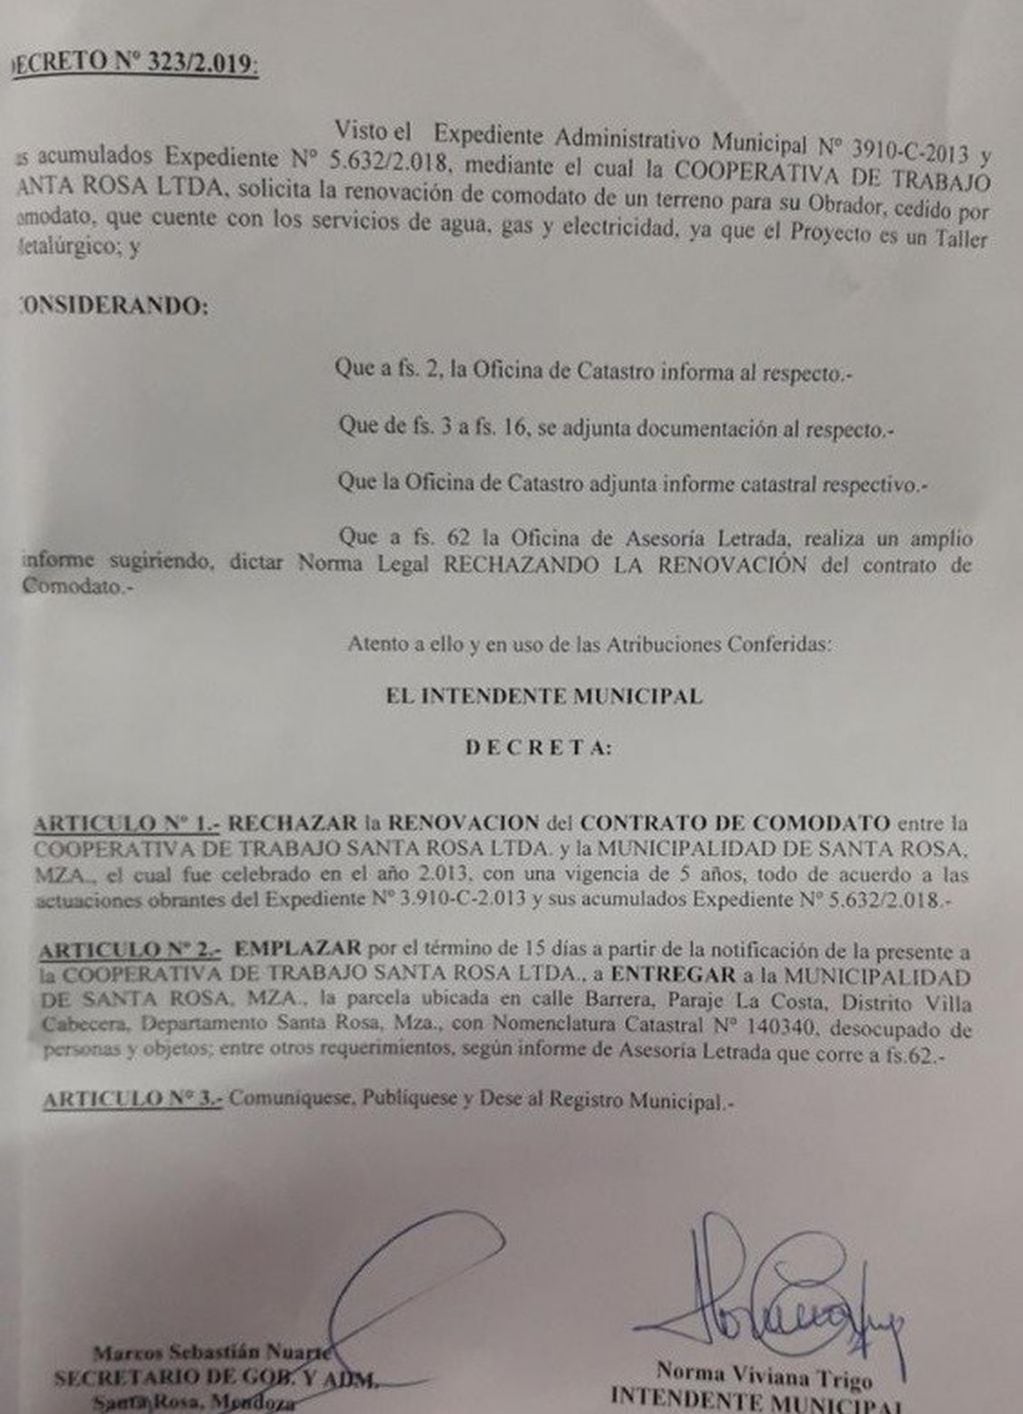 El decreto emitido por el municipio de Santa Rosa.